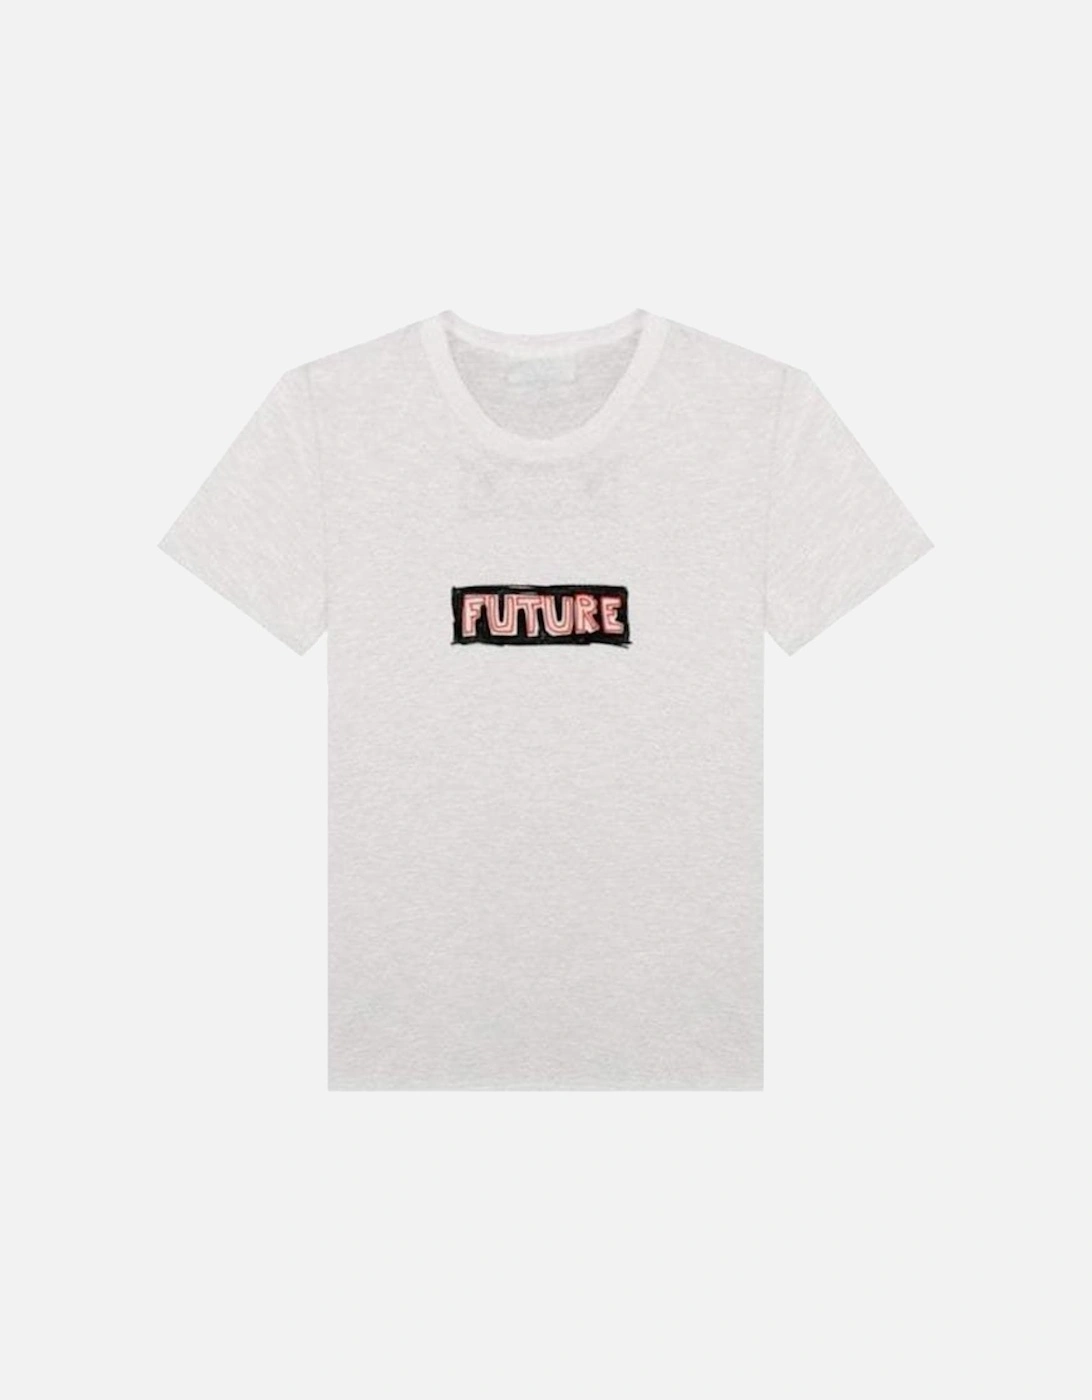 Men's Future Print T-shirt White, 4 of 3